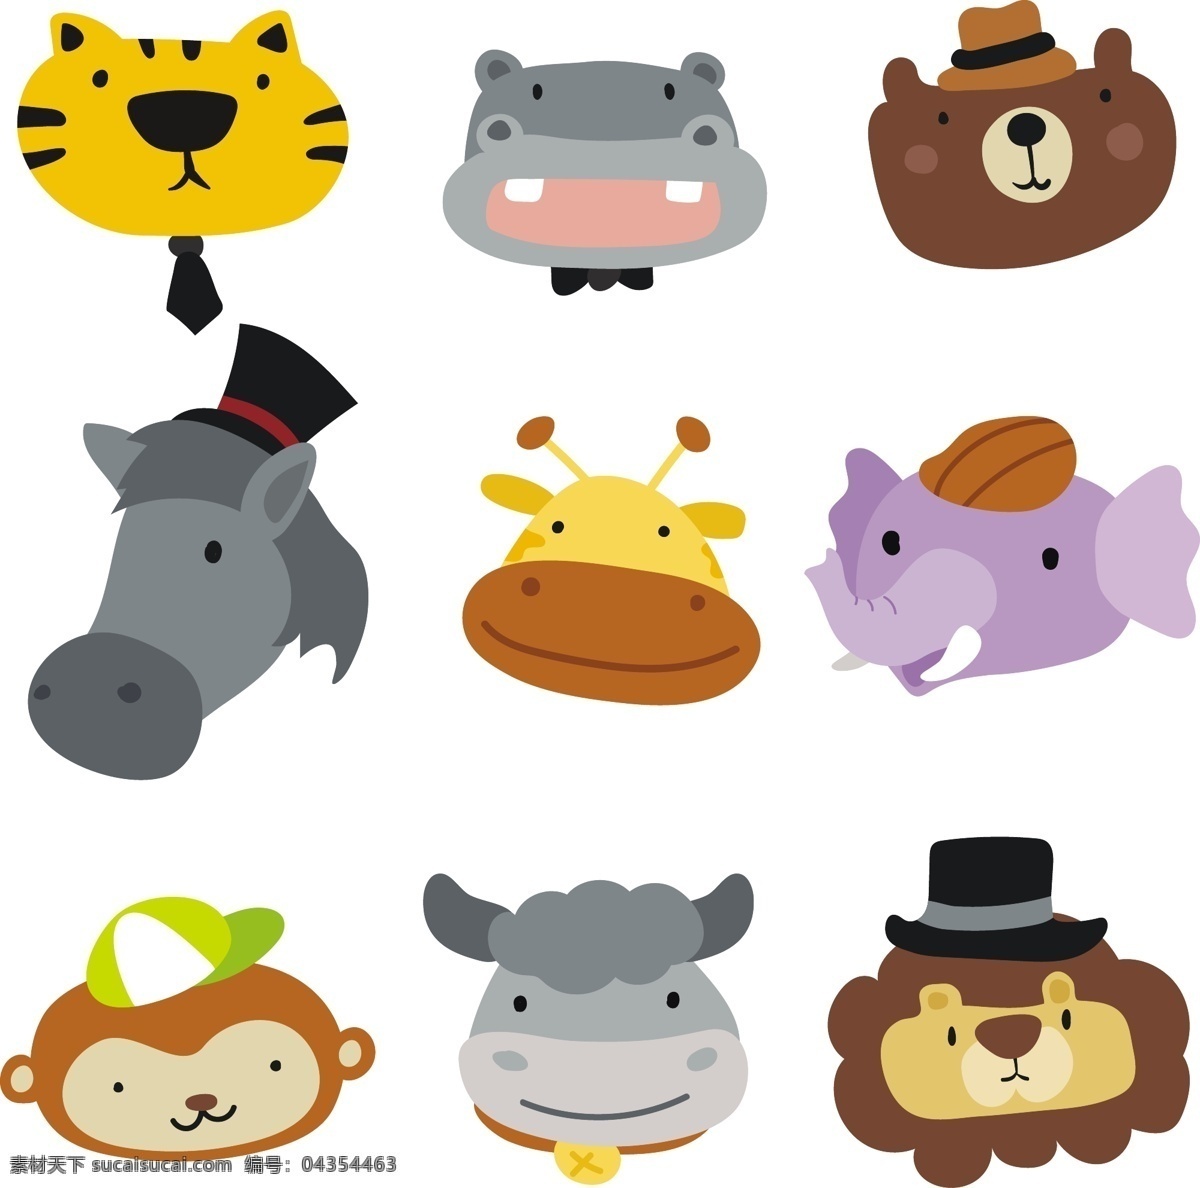 组 戴帽子 各种各样 卡通 动物 头像 元素 设计素材 创意设计 小动物 可爱 矢量素材